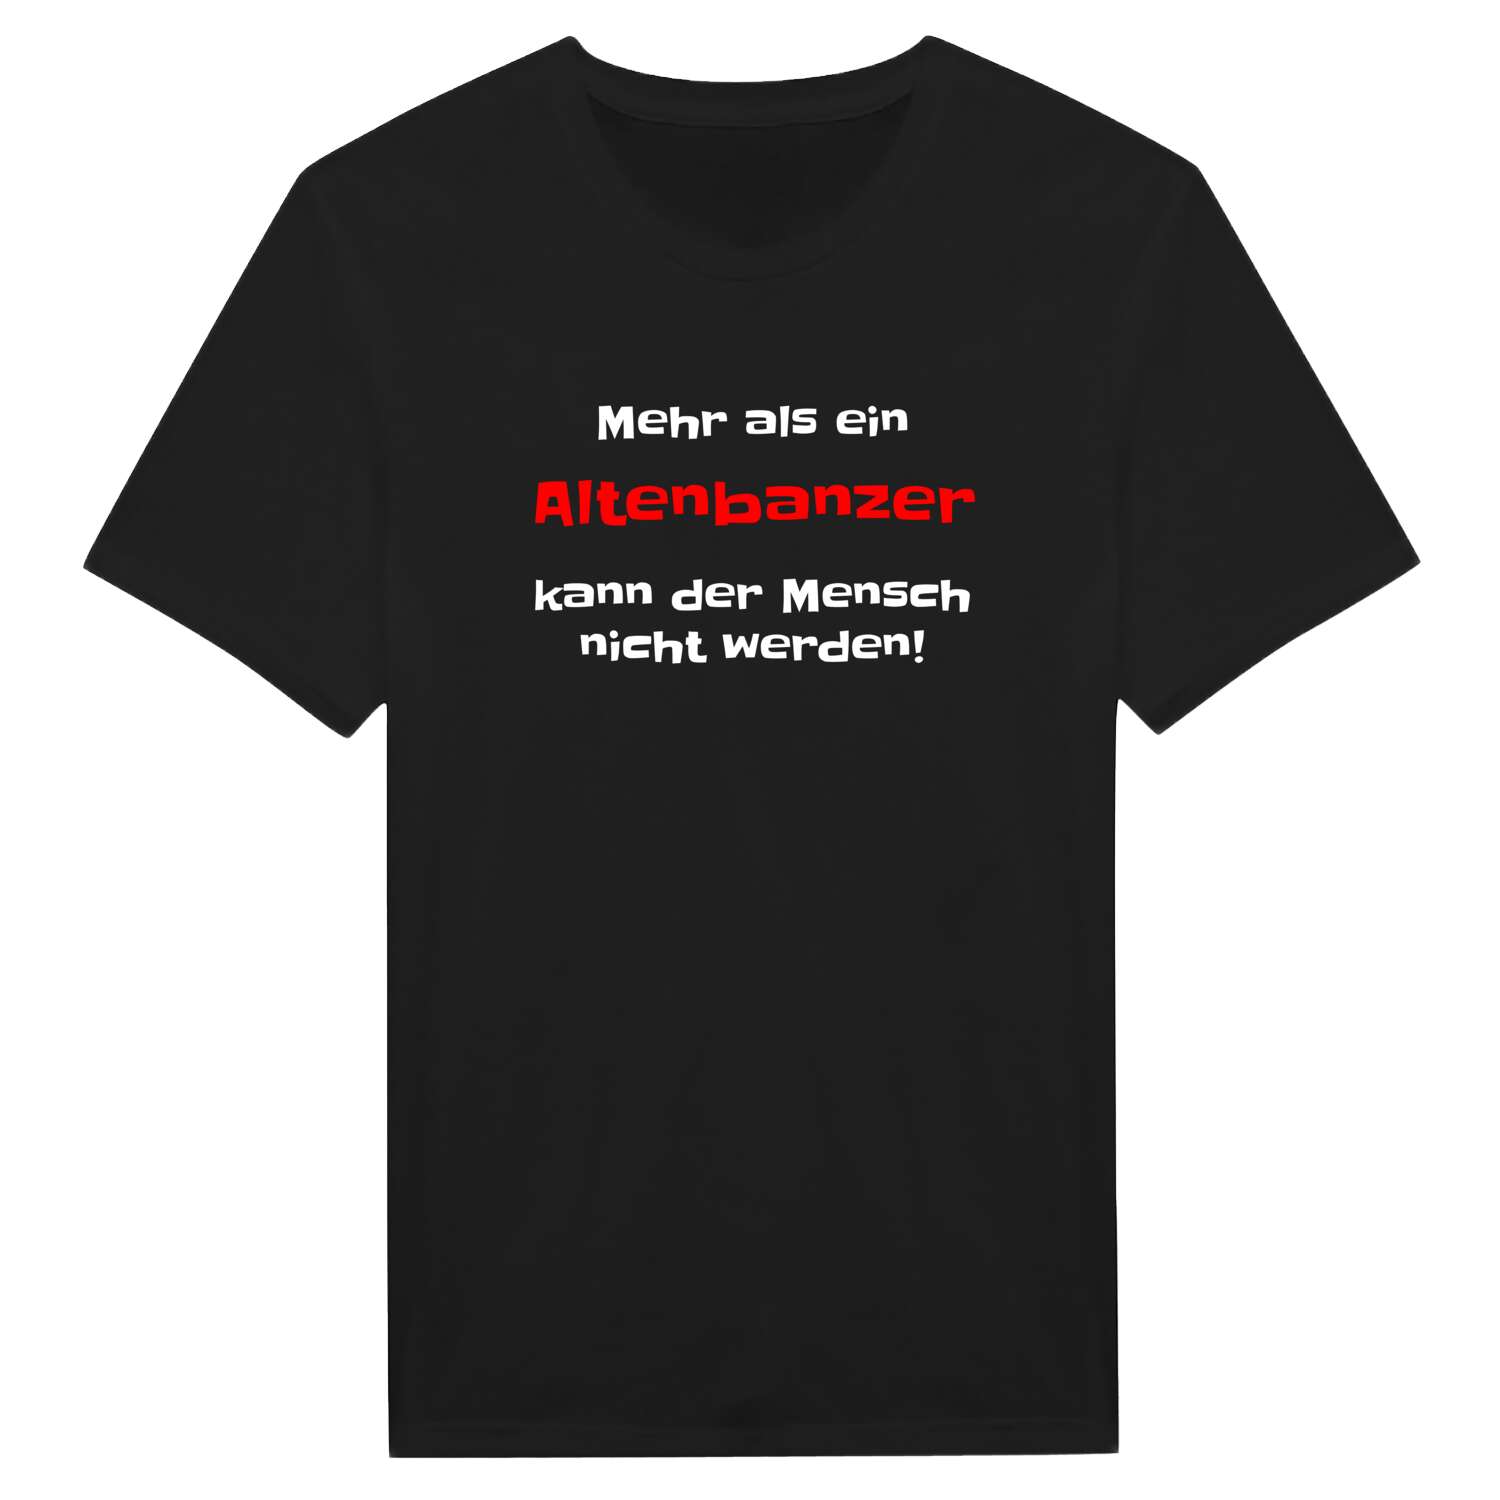 Altenbanz T-Shirt »Mehr als ein«